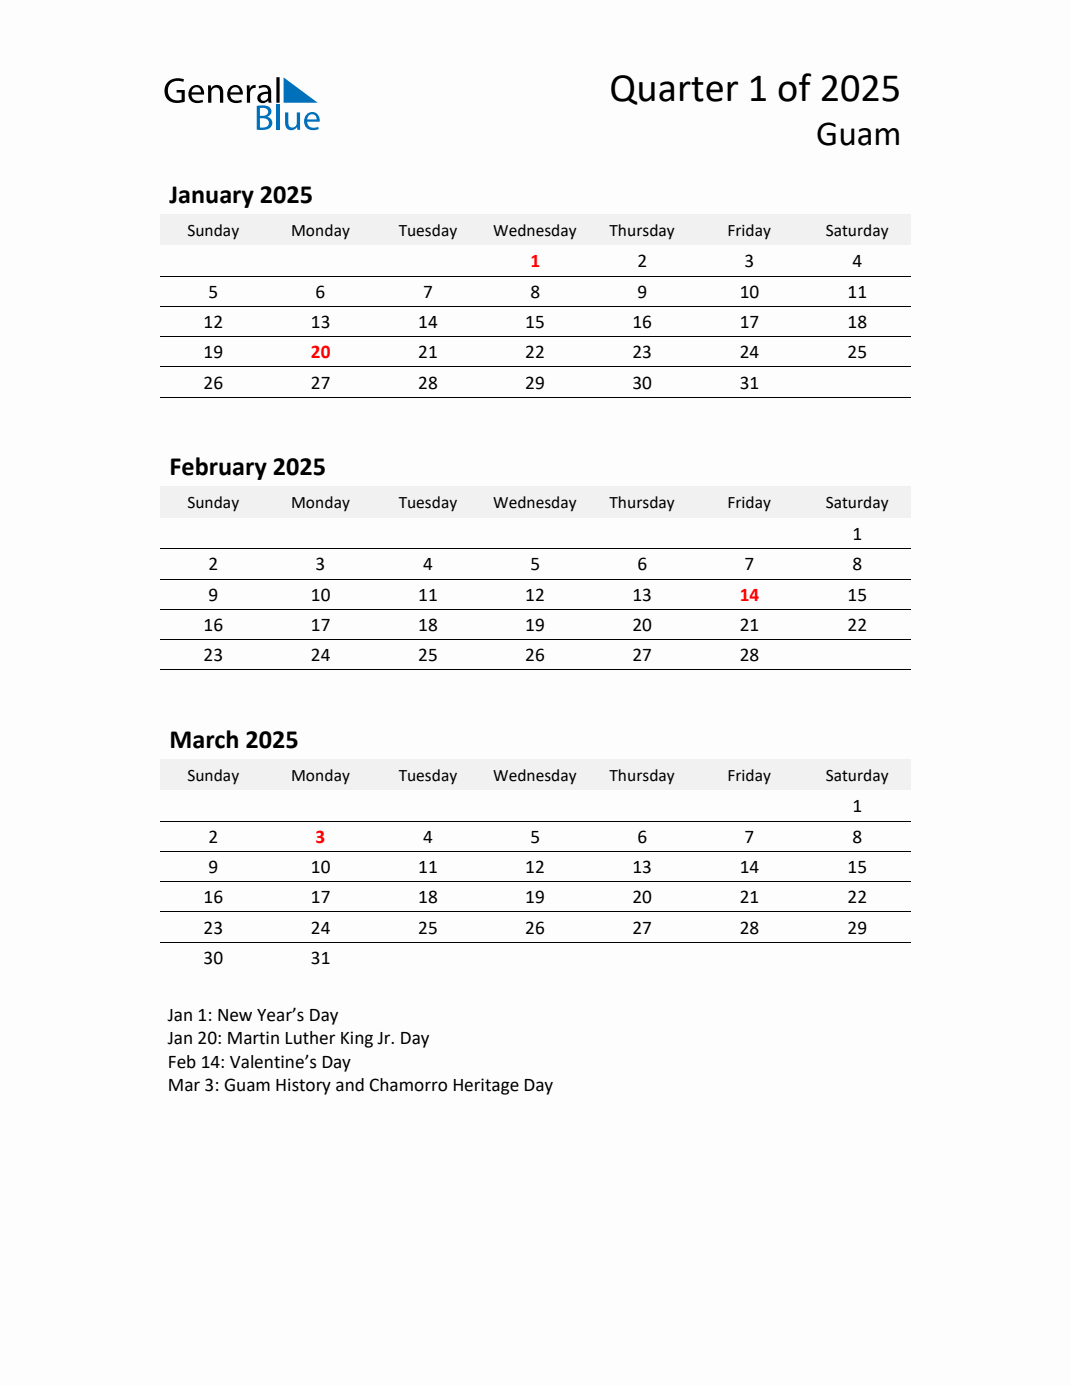 Q1 2025 Quarterly Calendar with Guam Holidays